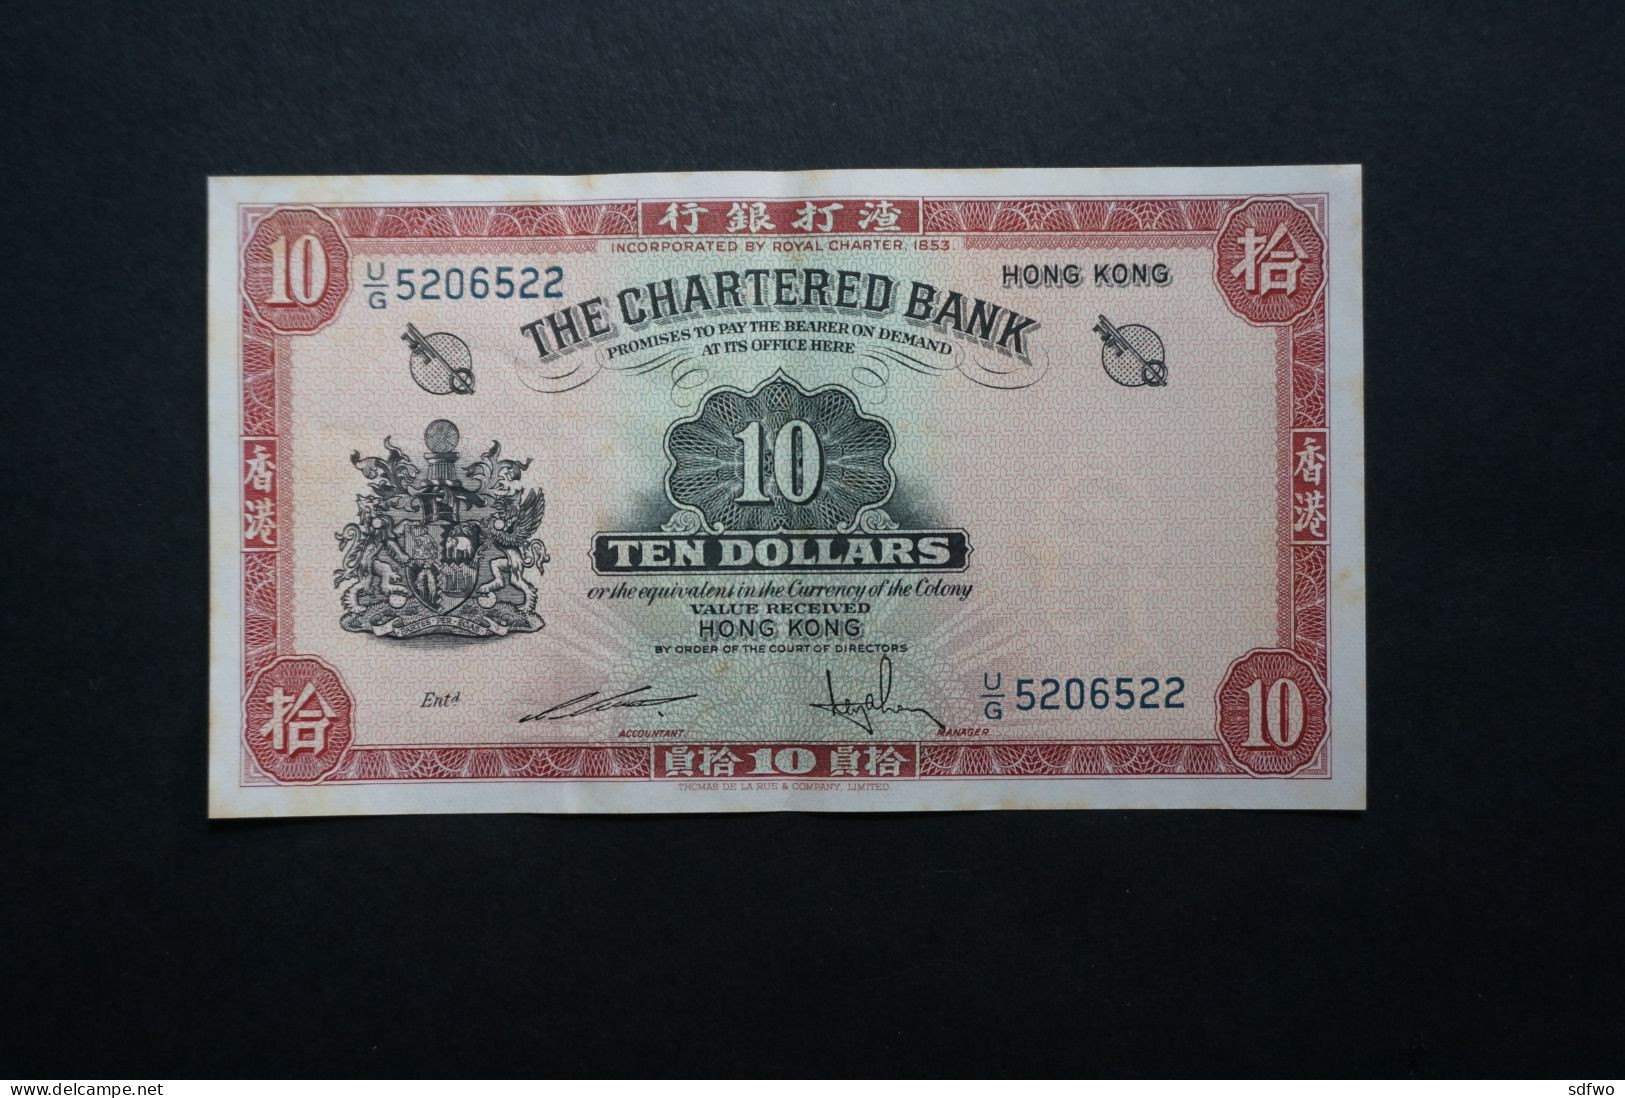 (M) 1962 HONG KONG OLD ISSUE - THE CHARTERED BANK 10 DOLLARS - #U/G 5206521 To 22 (2 Pcs) - Hong Kong